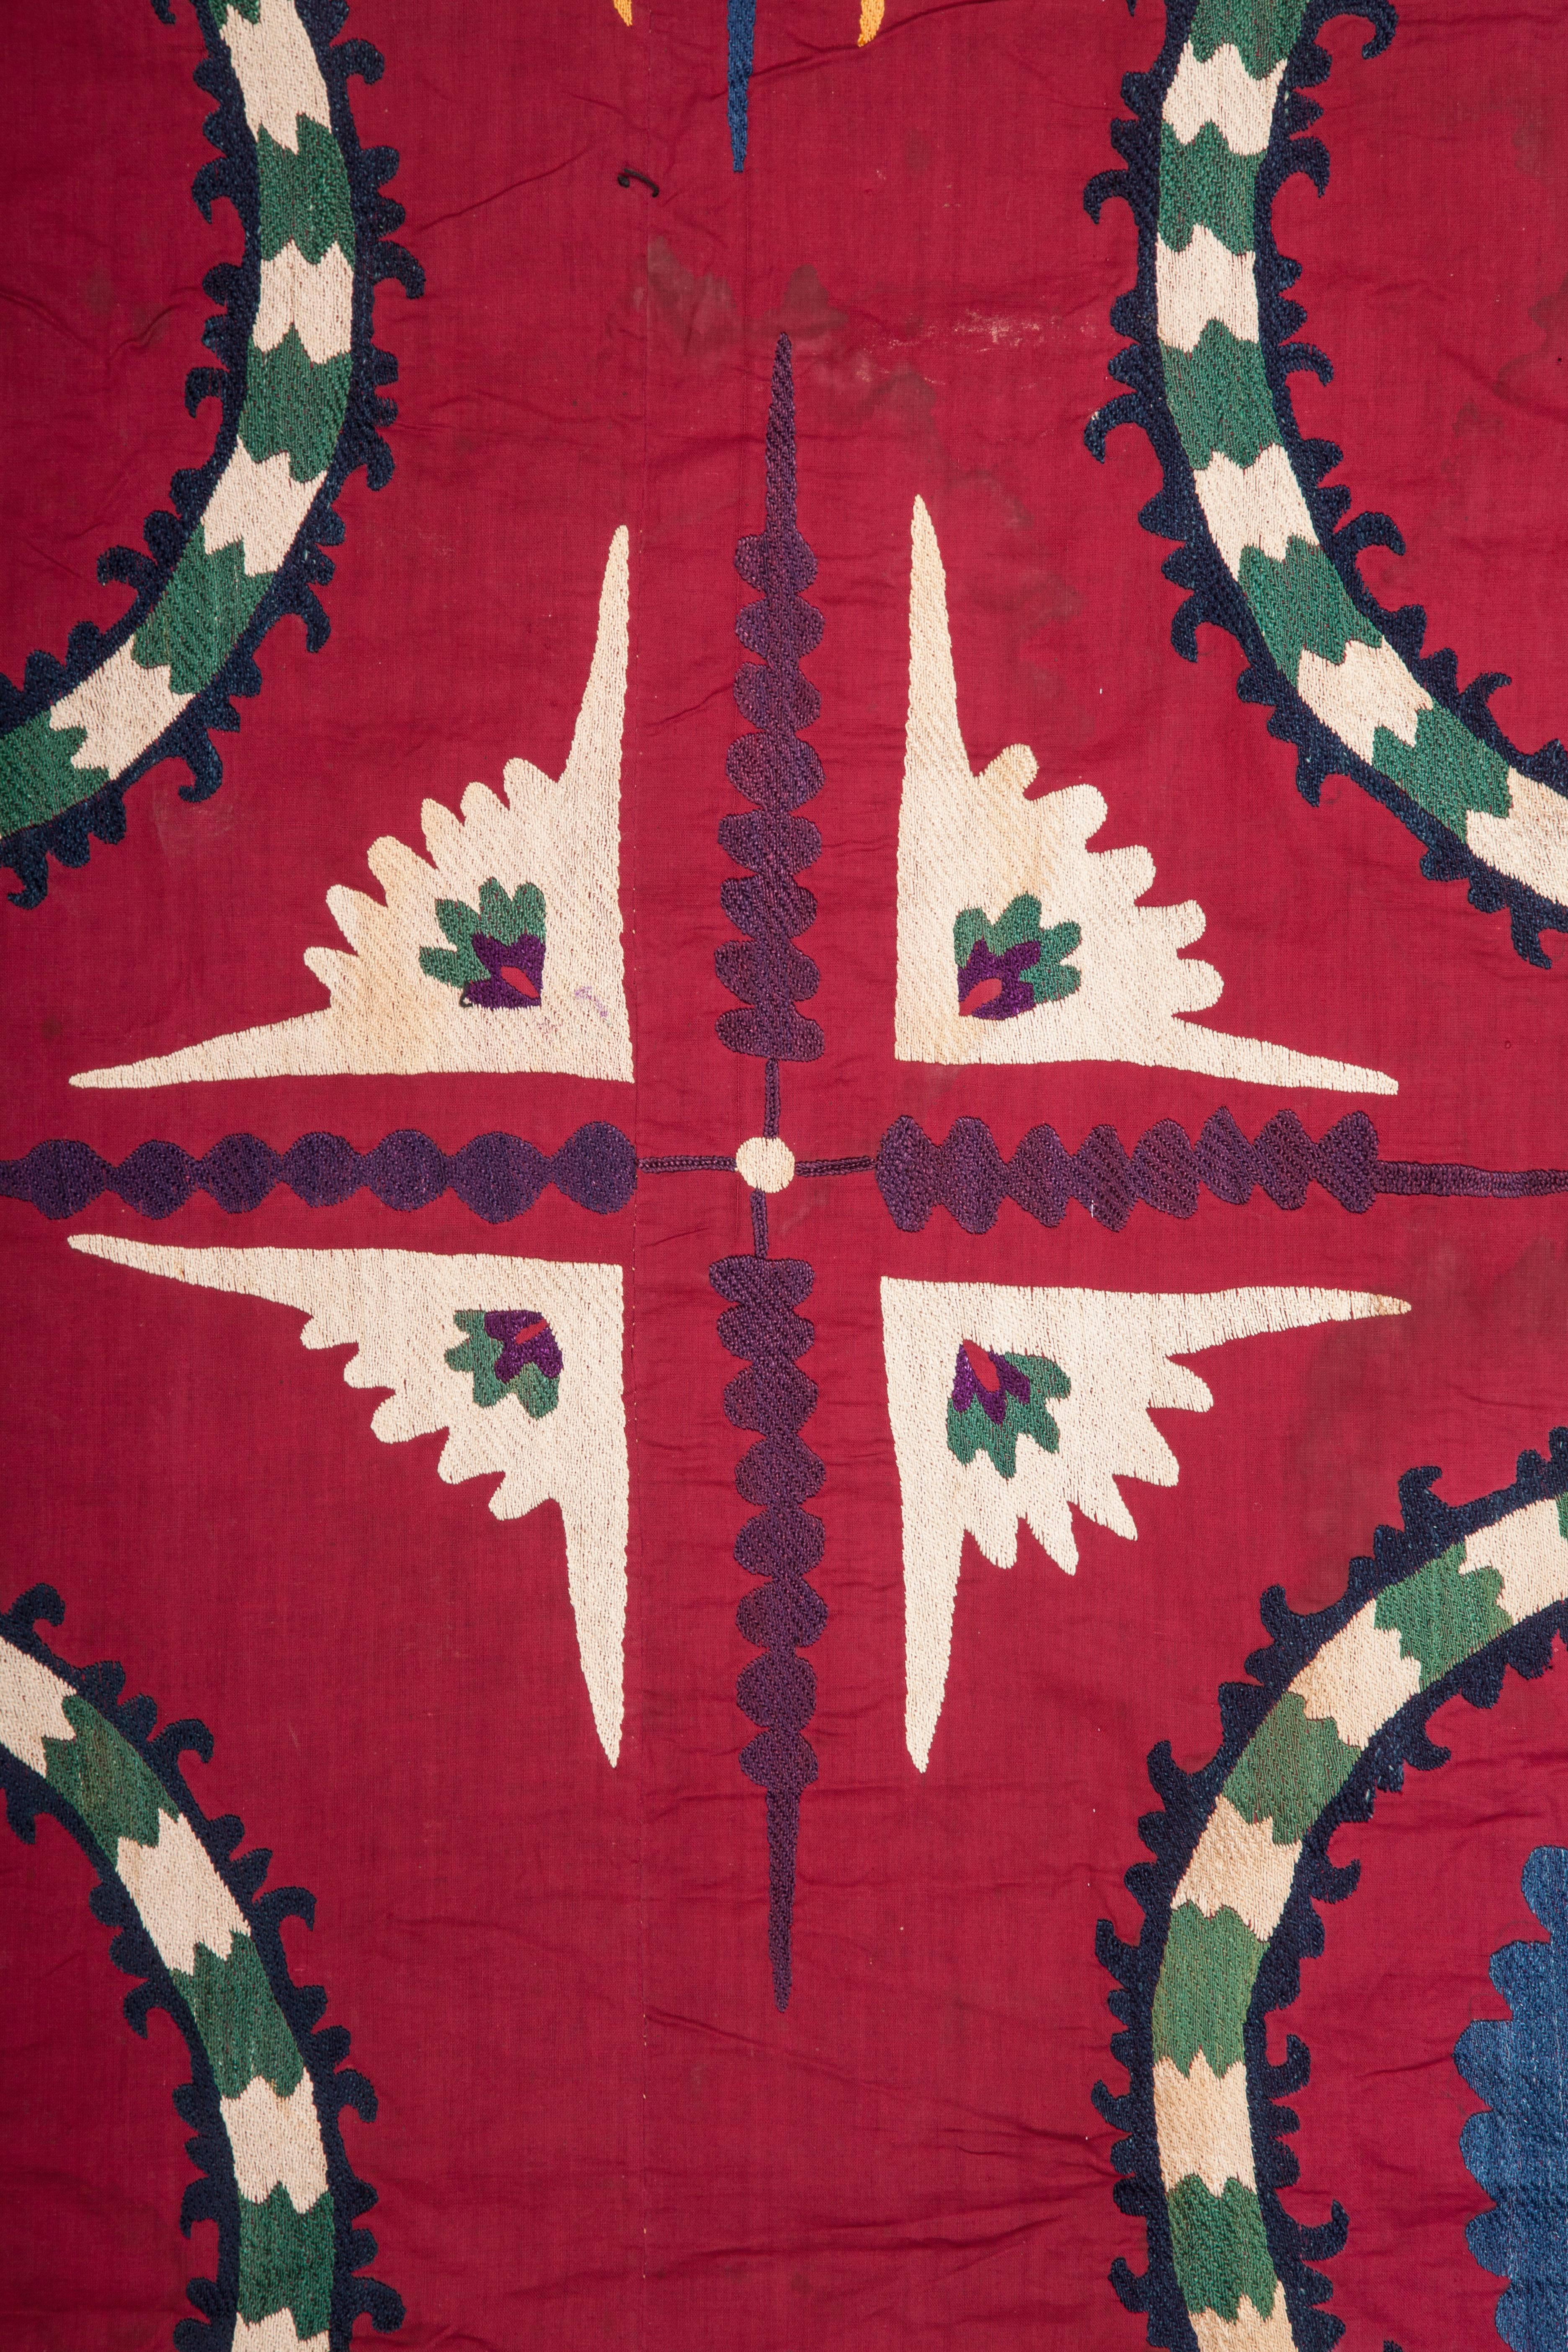 tashkent carpets